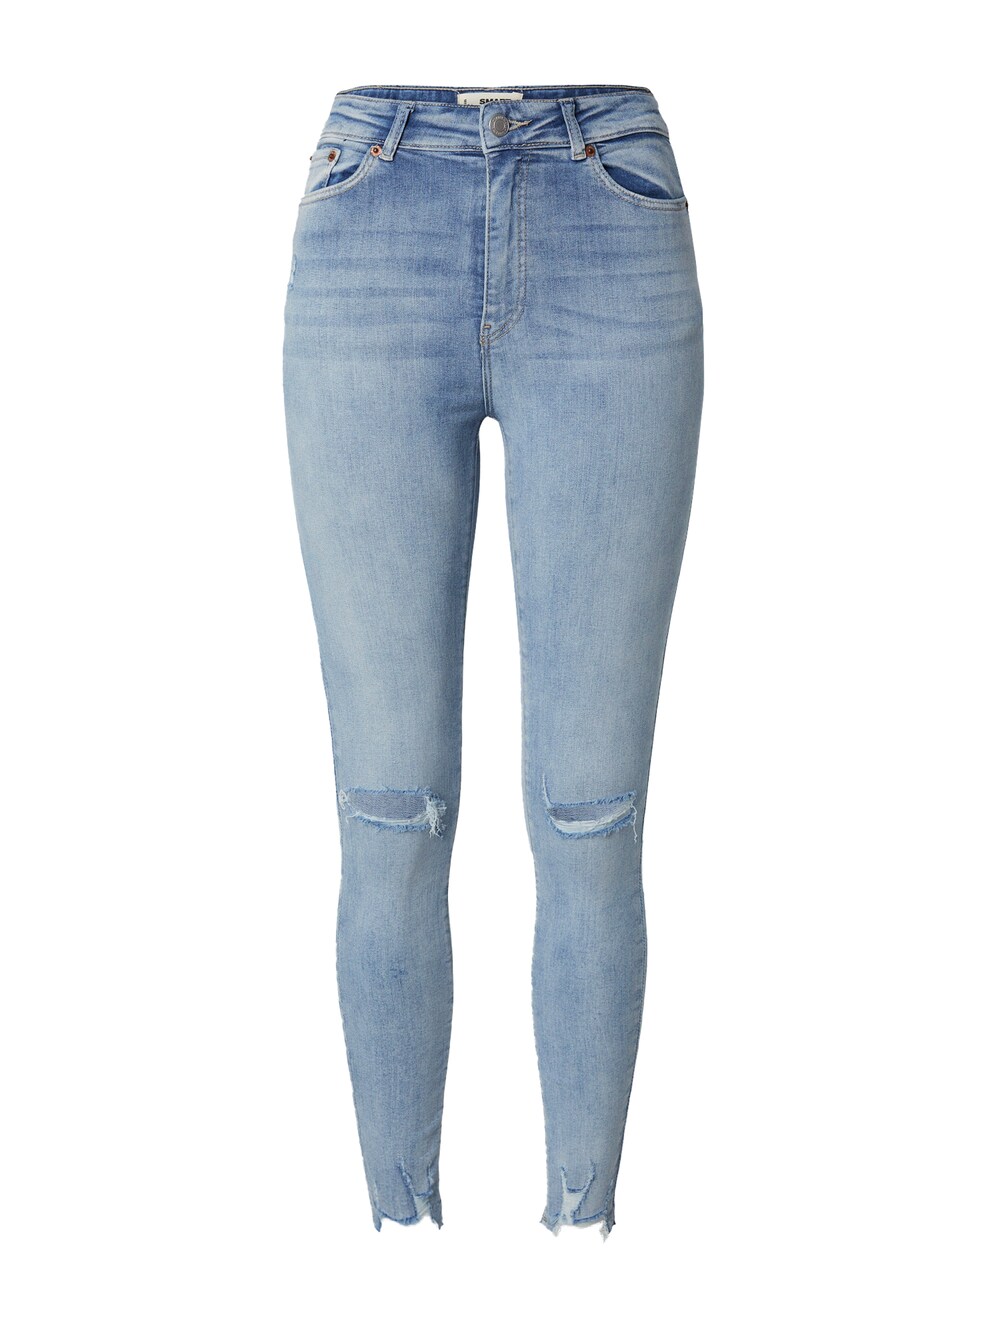 Узкие джинсы Tally Weijl SPADESMART2, синий топ tally weijl серый в полоску 42 размер новый